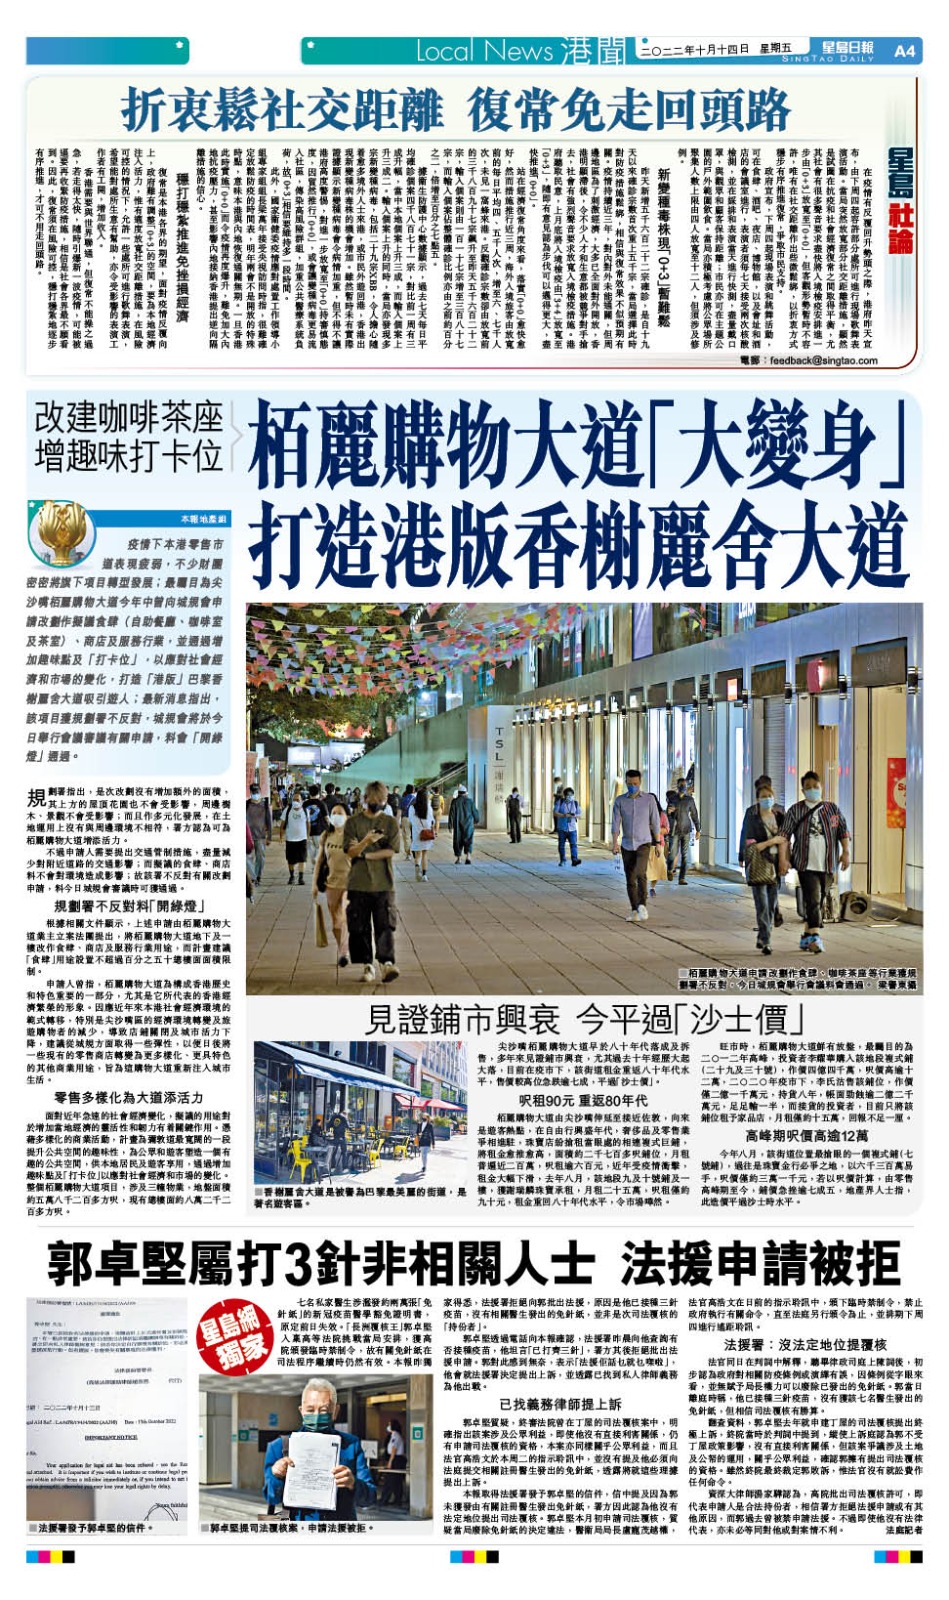 本報今日報導栢麗購物大道將「大變身」打造港版香榭麗舍大道。